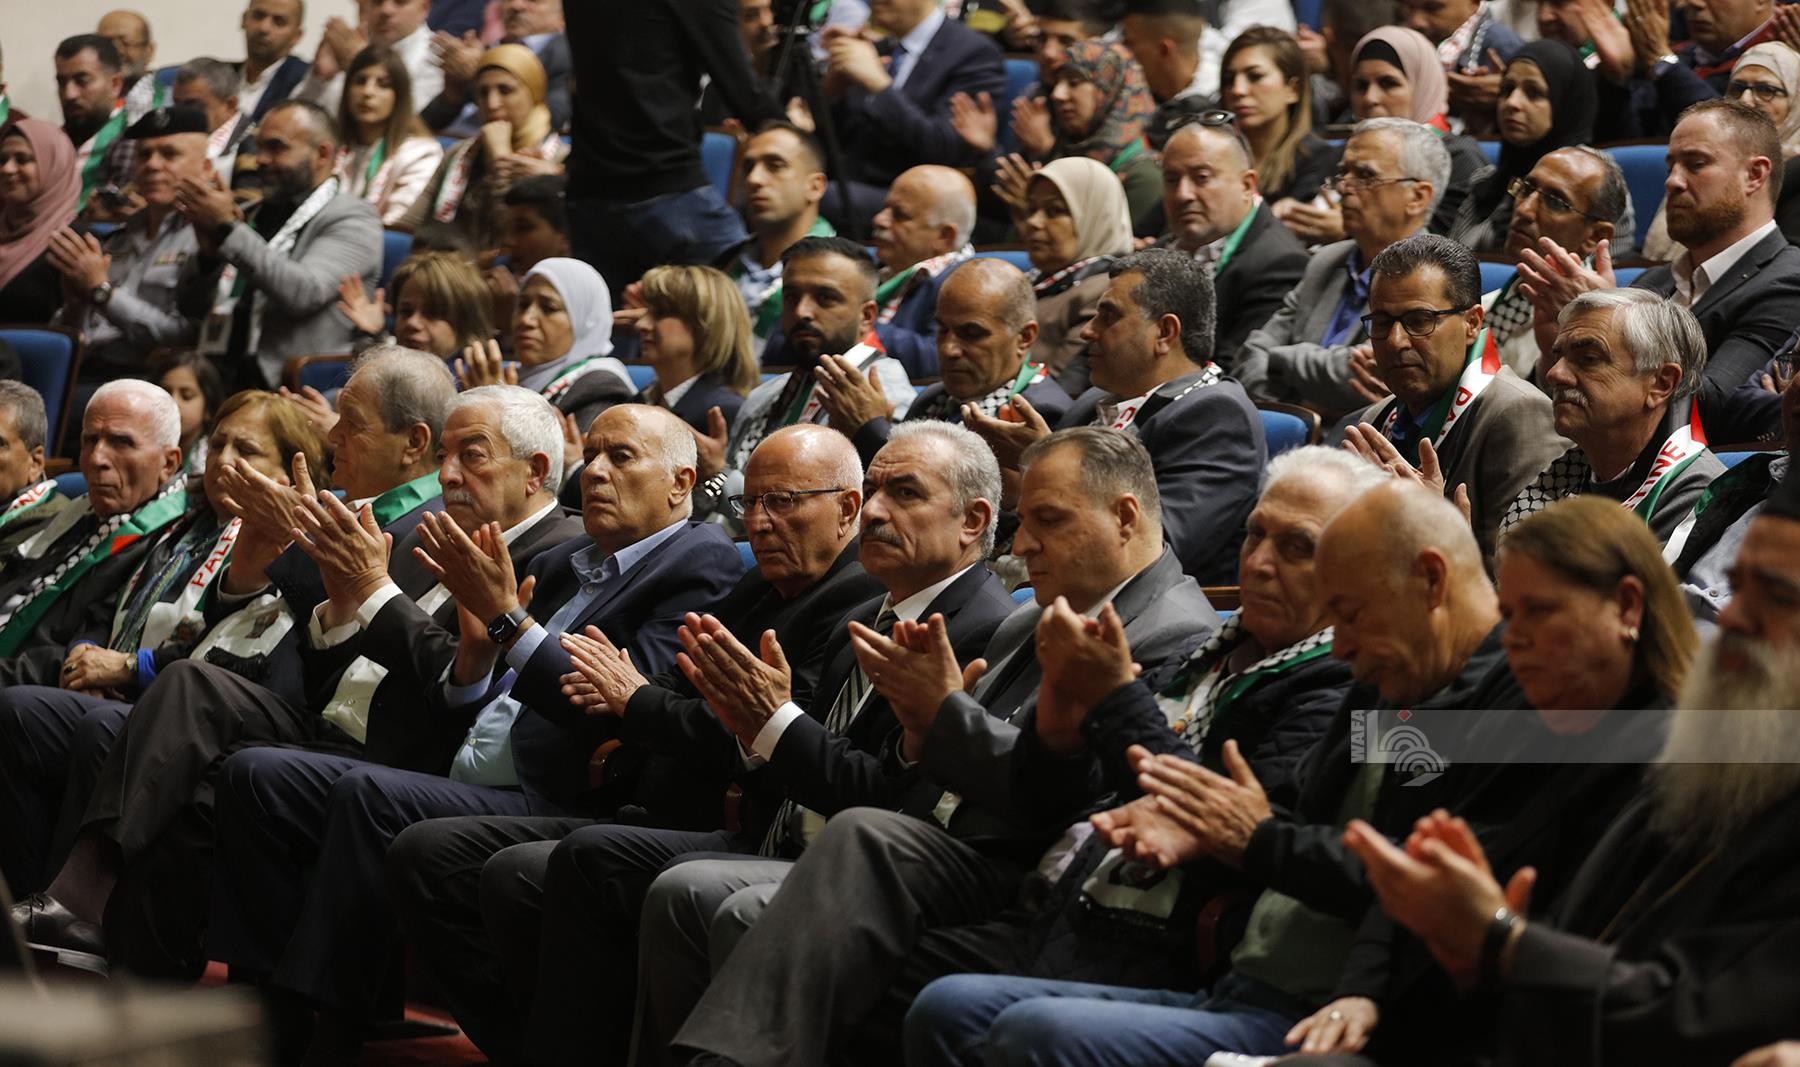 اللجنة الوطنية لاطلاق سراح الاسير القائد مروان البرغوثي تنظم مهرجان جماهيري في الذكرى الـسنوية الـ21 لاعتقاله 43.jpg